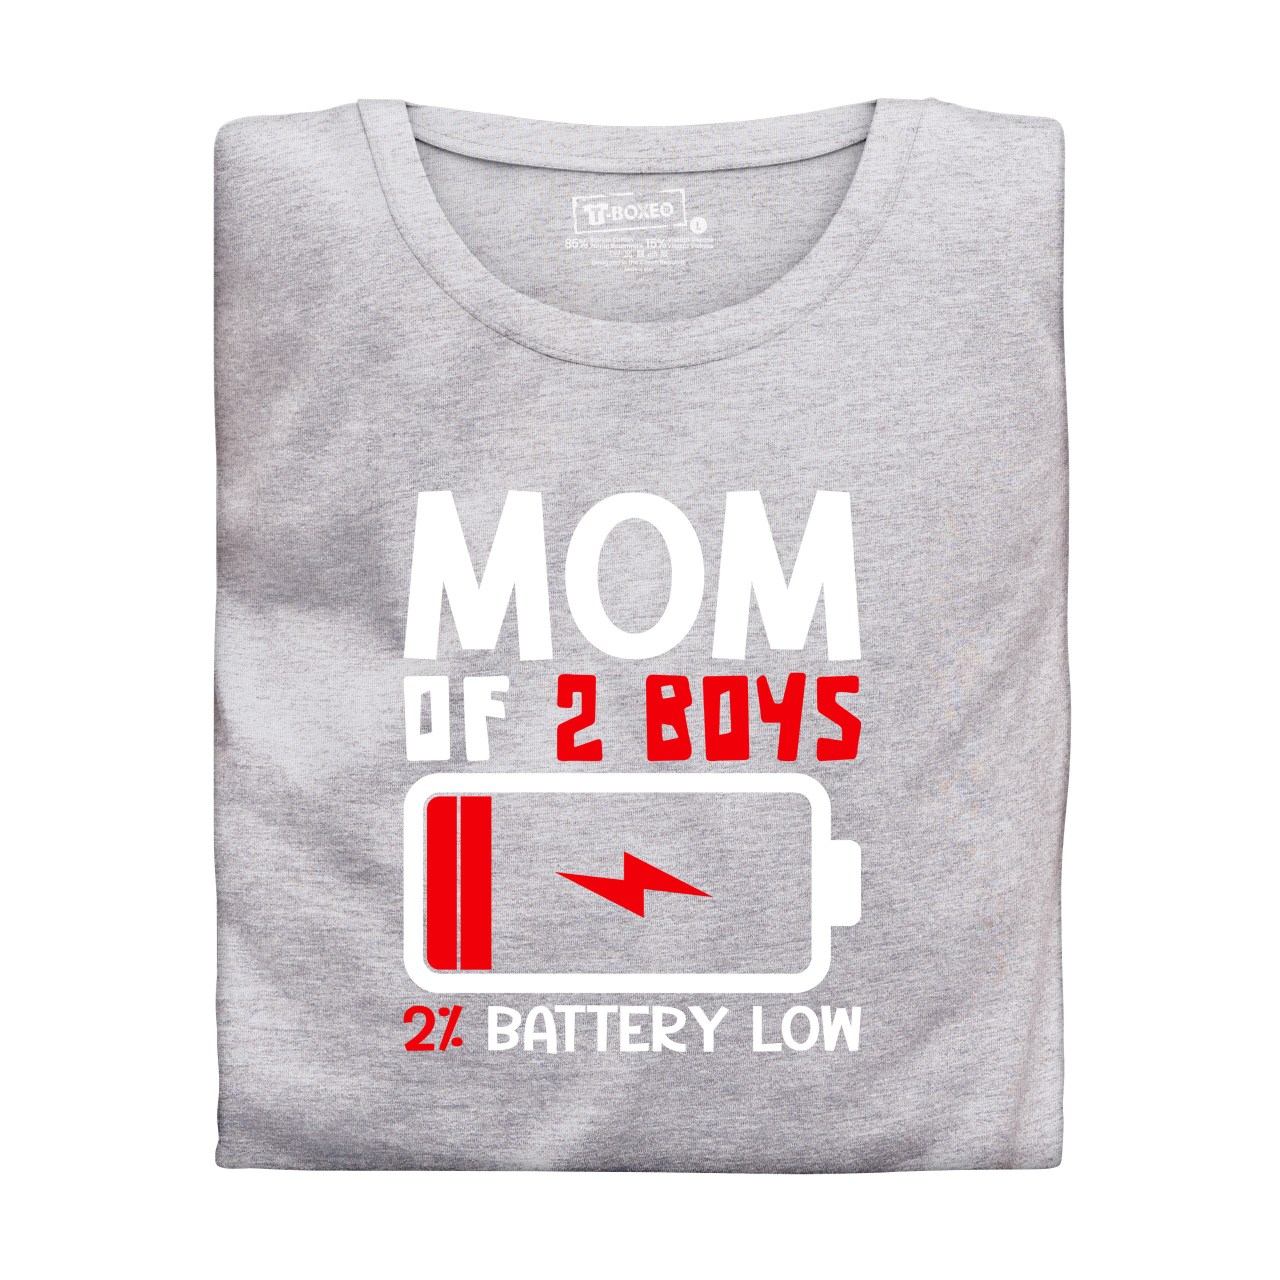 Dámské tričko s potiskem “Mom of 2 boys, battery low”